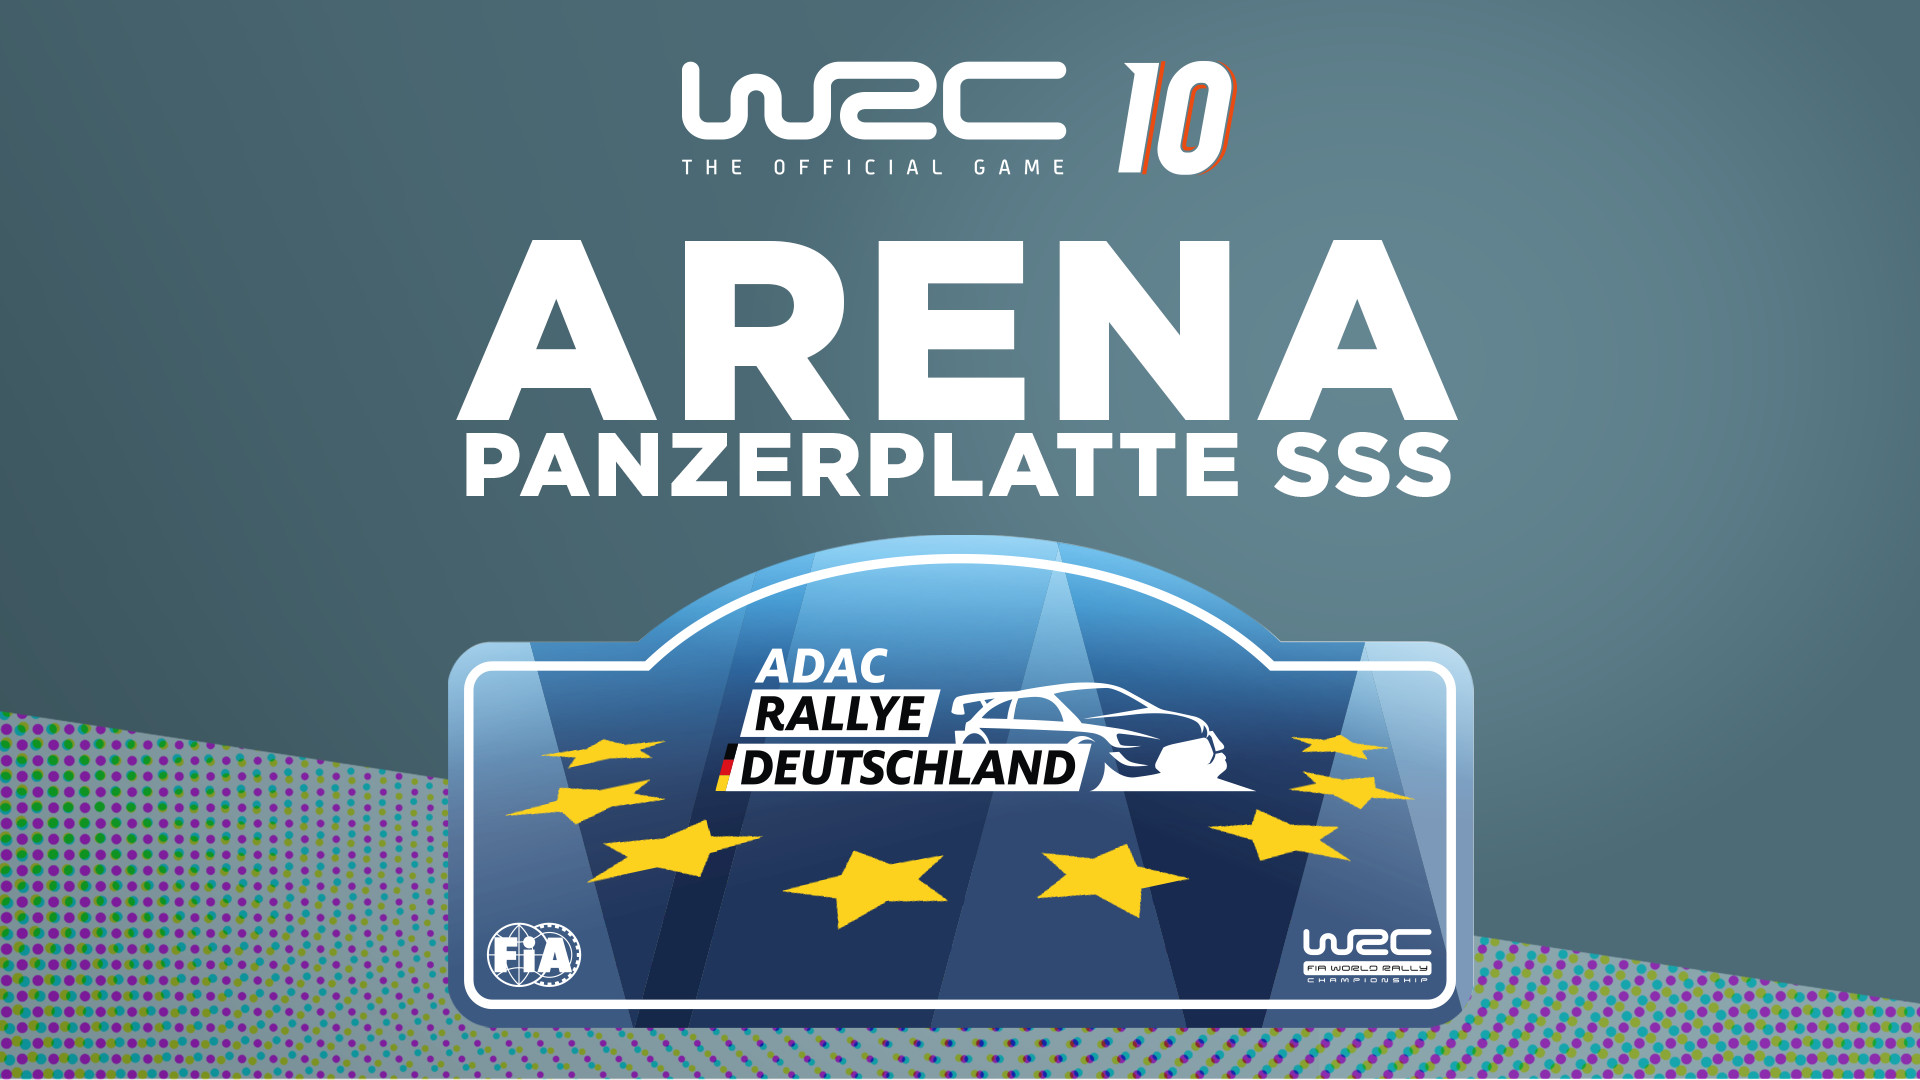 [$ 4.51] WRC 10 - Arena Panzerplatte SSS DLC Steam CD Key